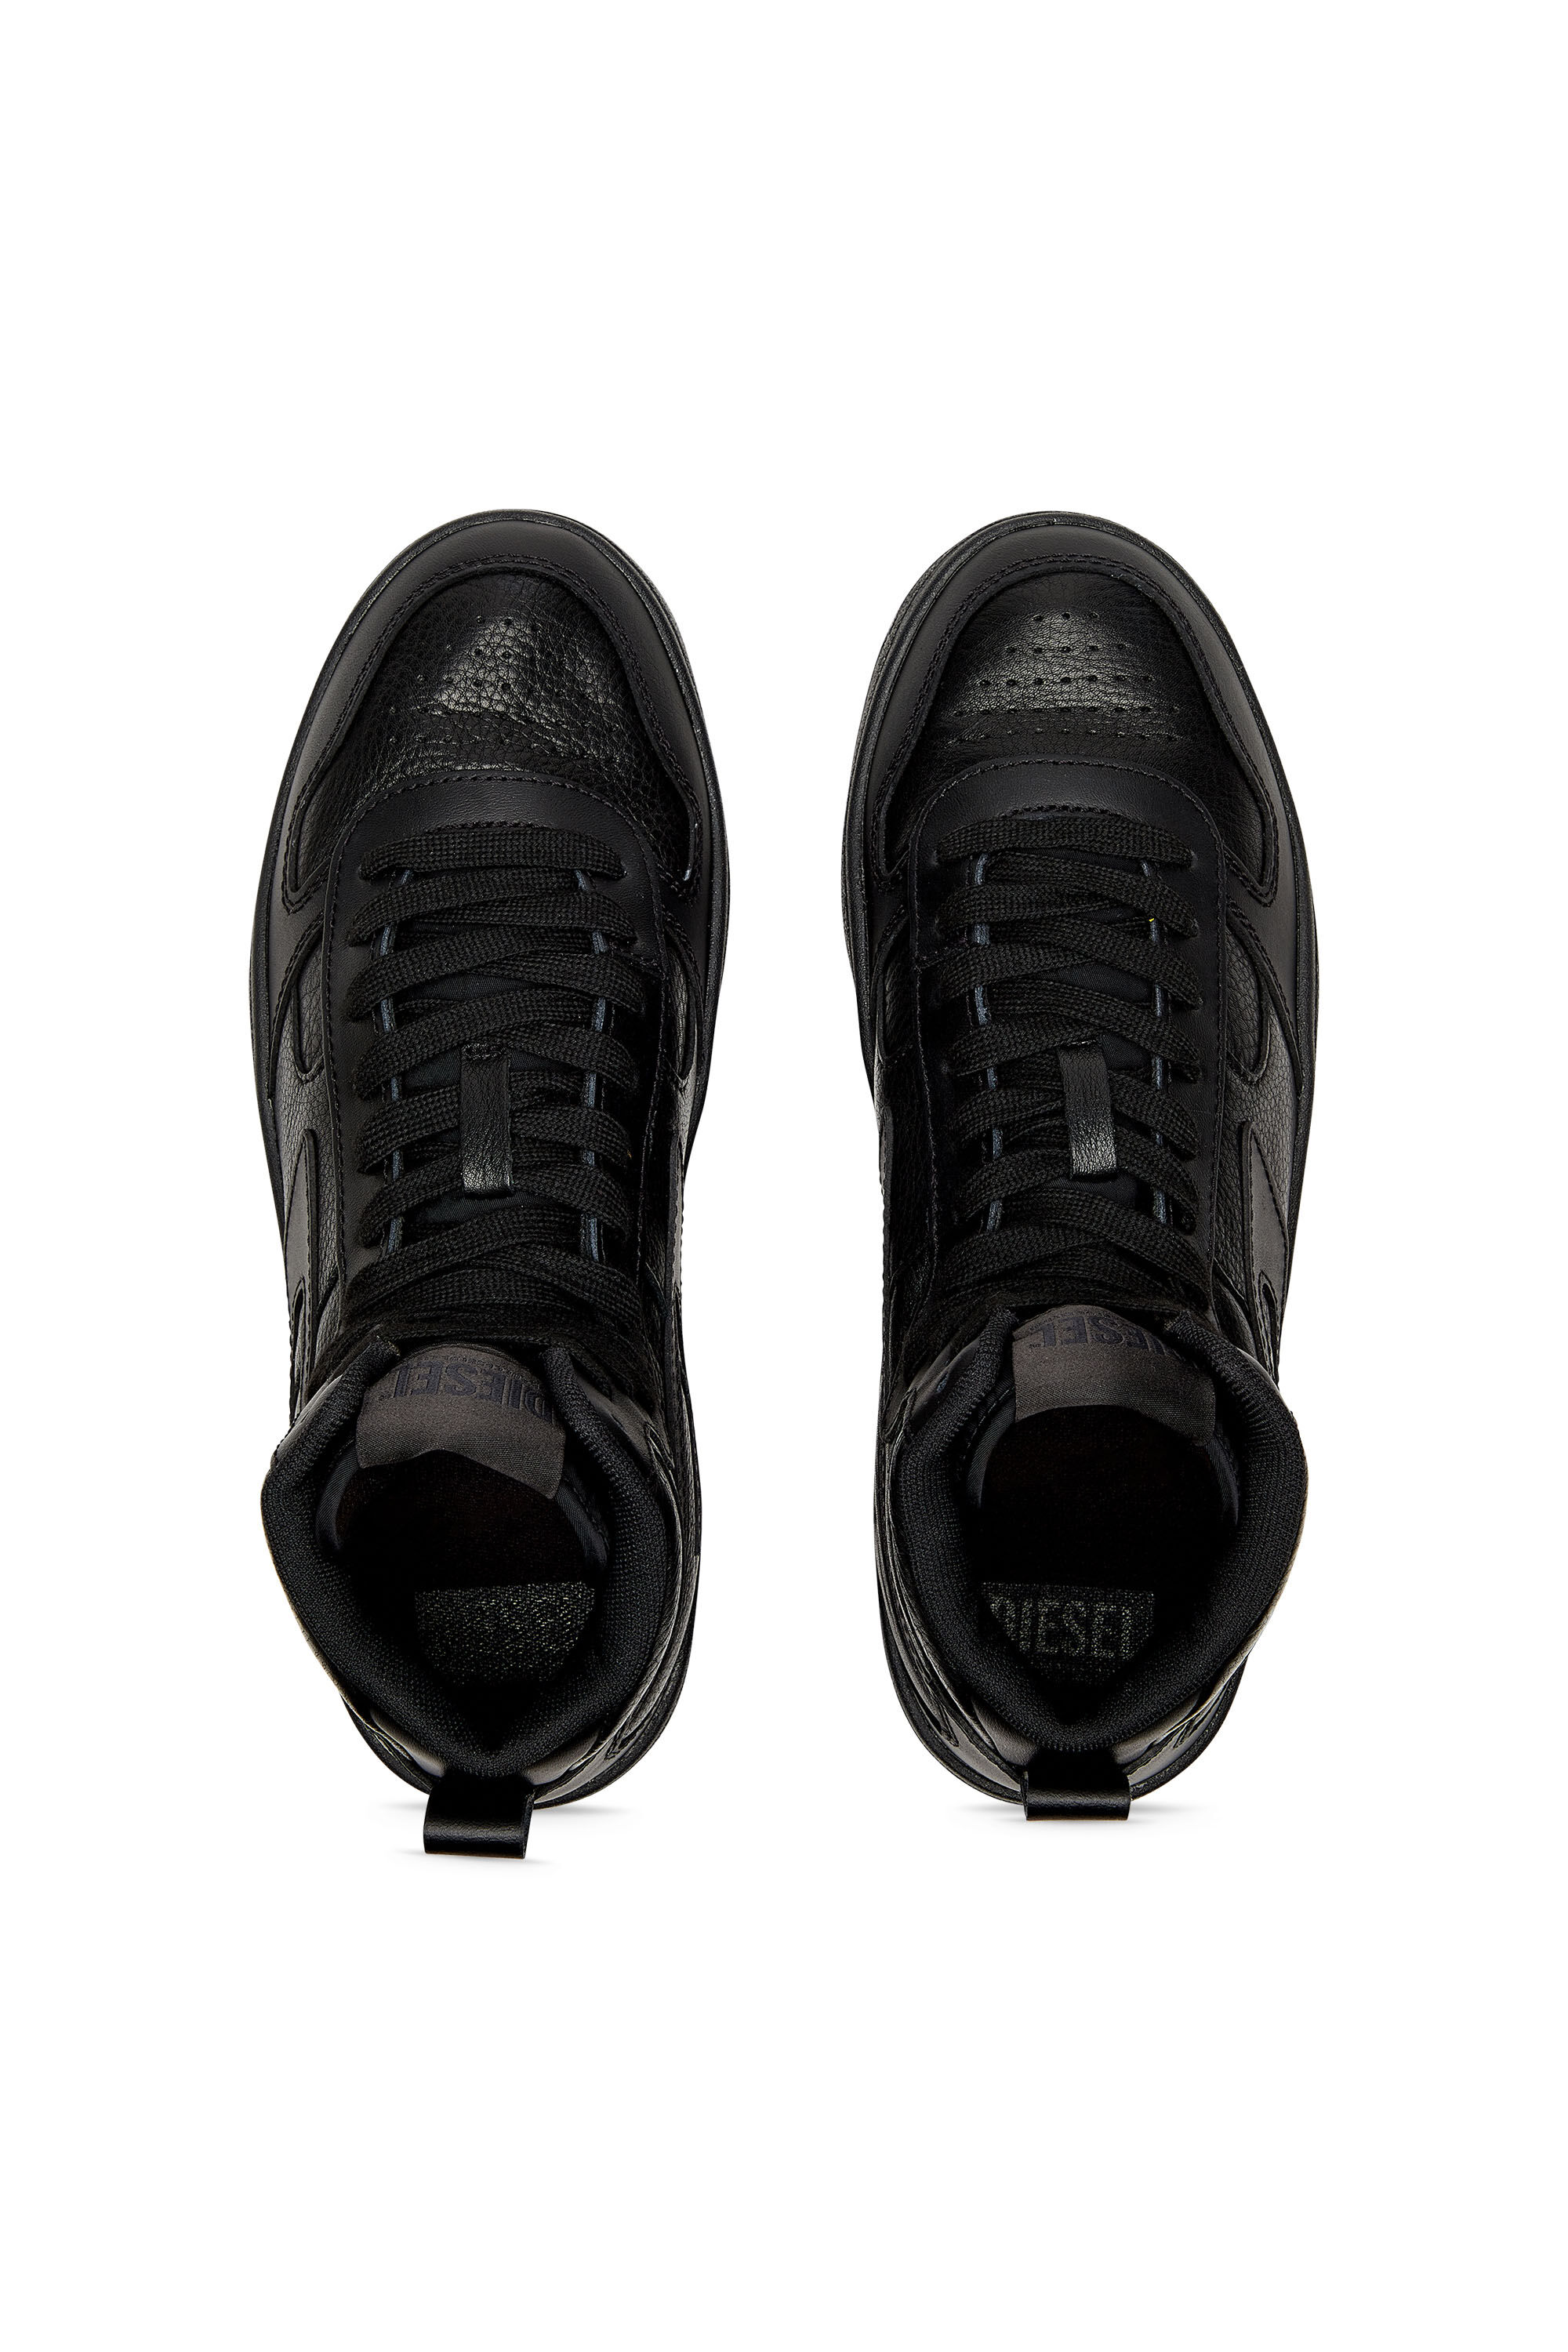 Diesel - S-UKIYO V2 MID, Man S-Ukiyo V2 Mid - High-top sneakers with D branding in Black - Image 4